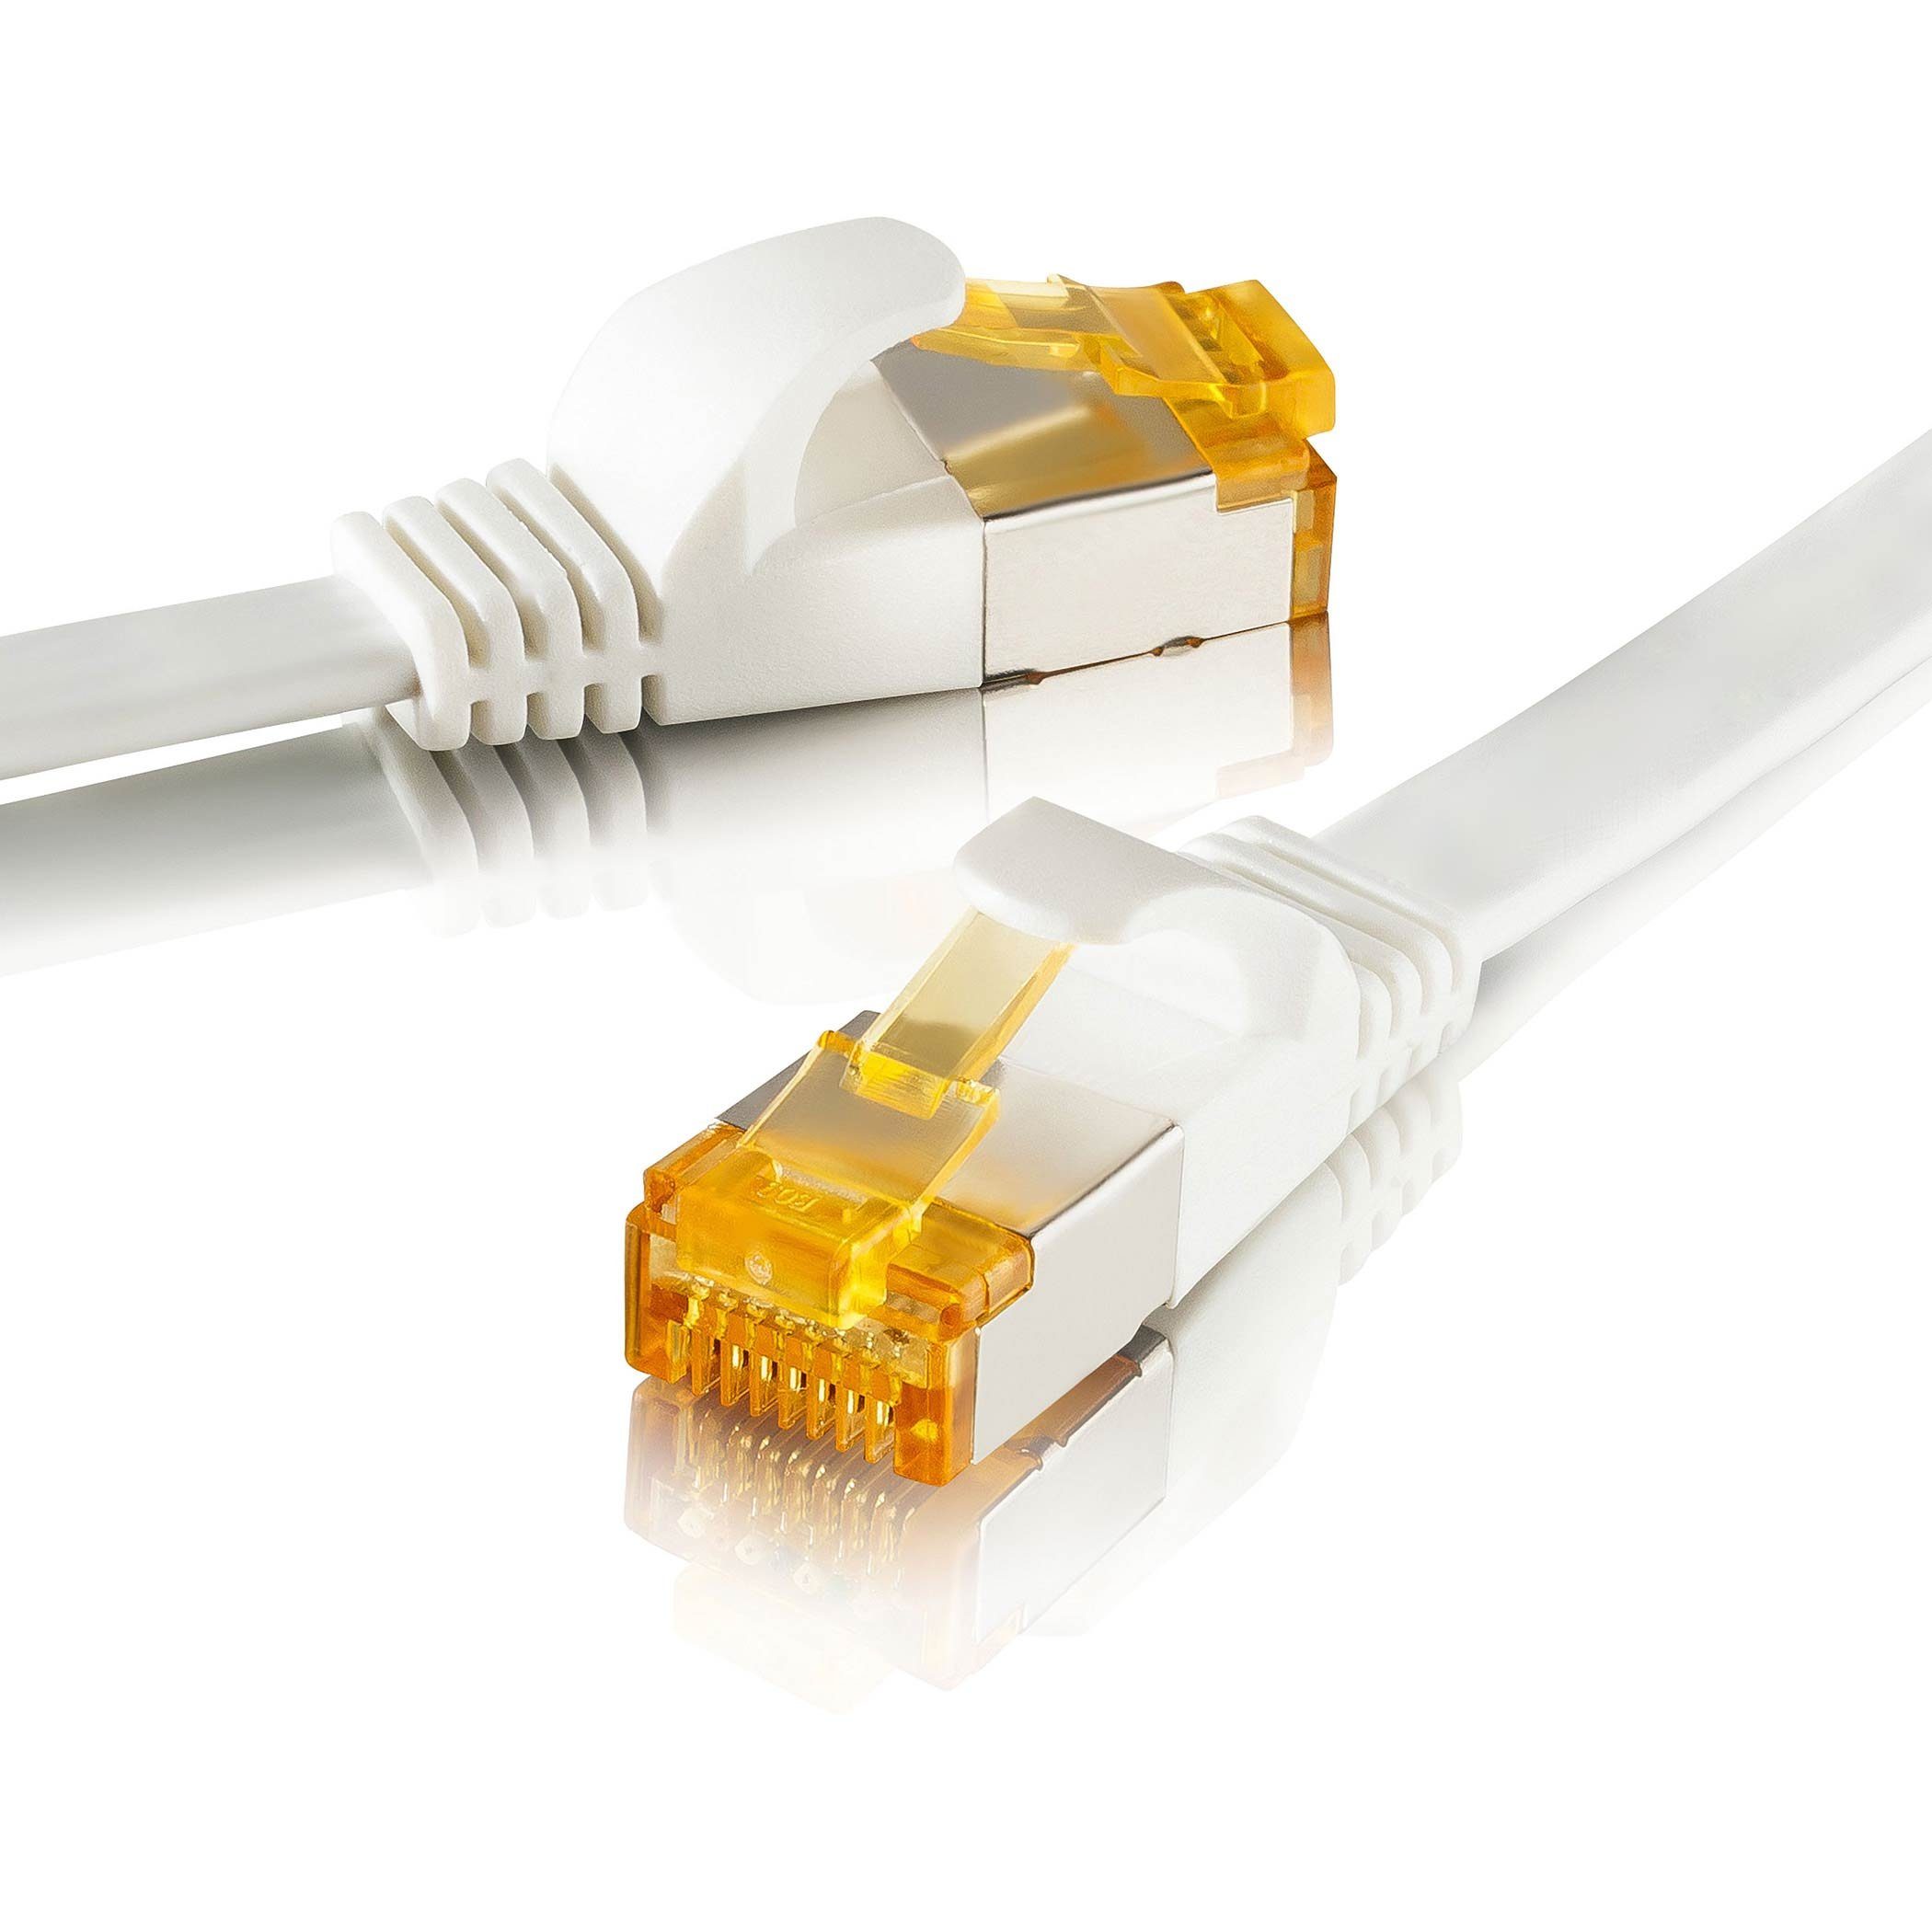 SEBSON LAN Kabel 10m CAT 7 flach, Netzwerkkabel 10 Gbit/s - RJ45 Stecker Netzkabel, (1000 cm)